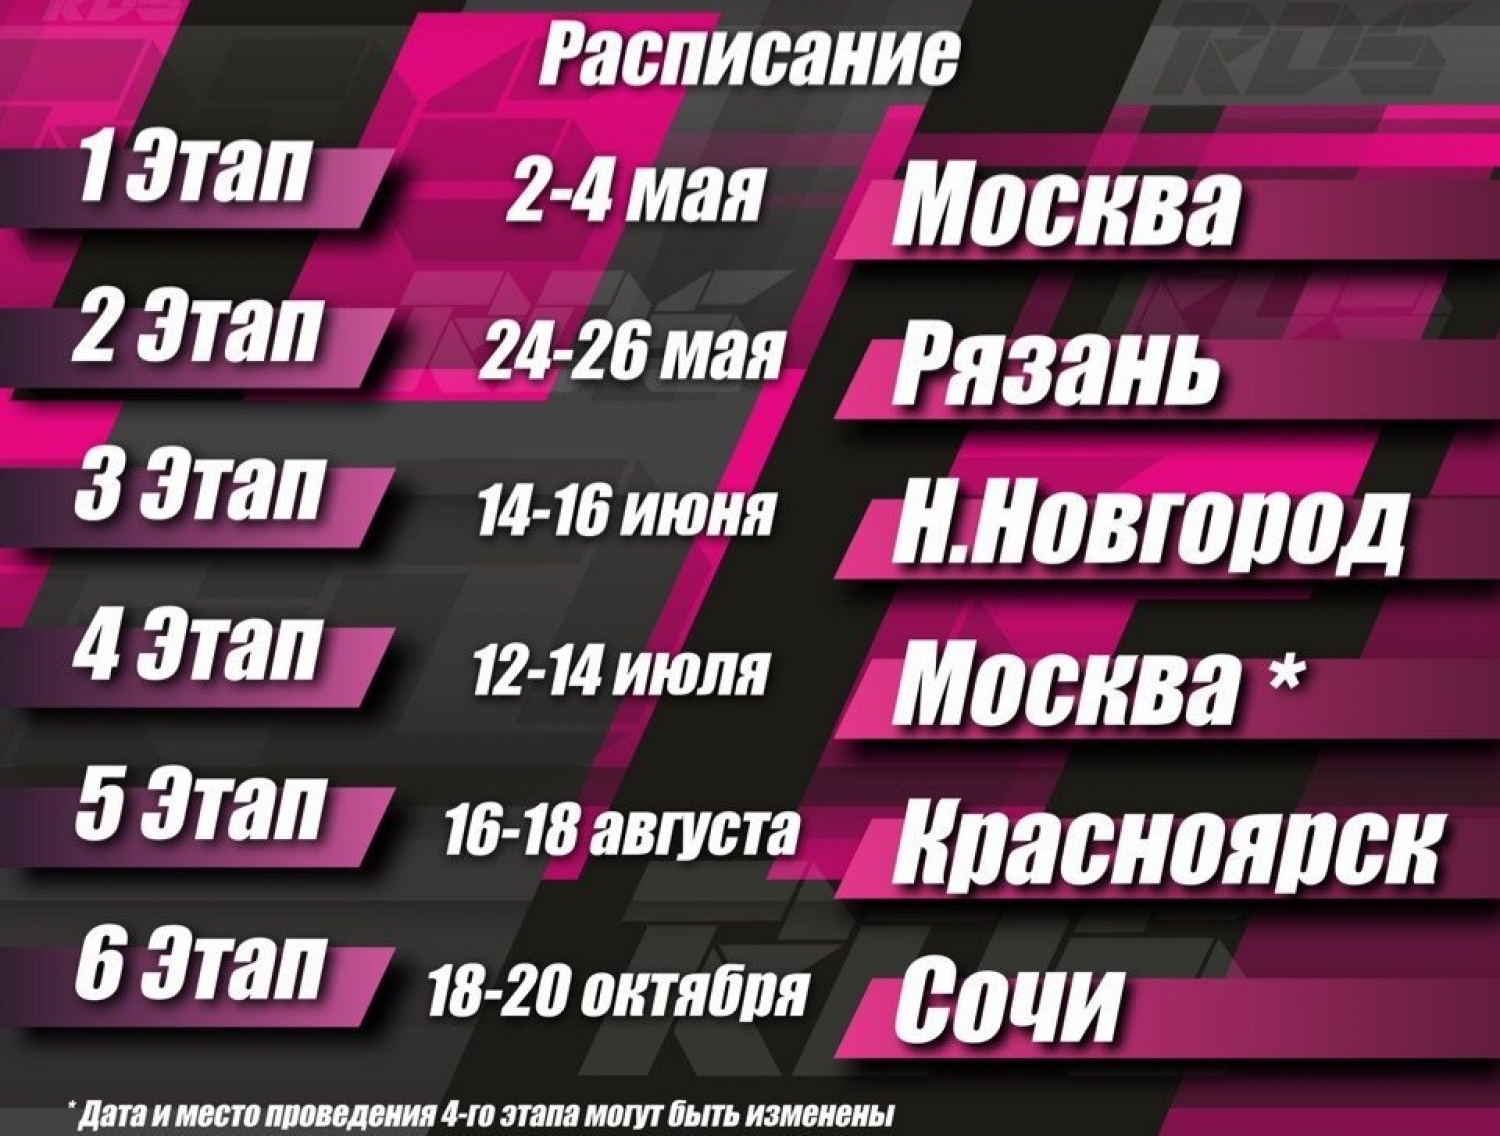 Официальный календарь этапов Российской Дрифт Серии Гран При